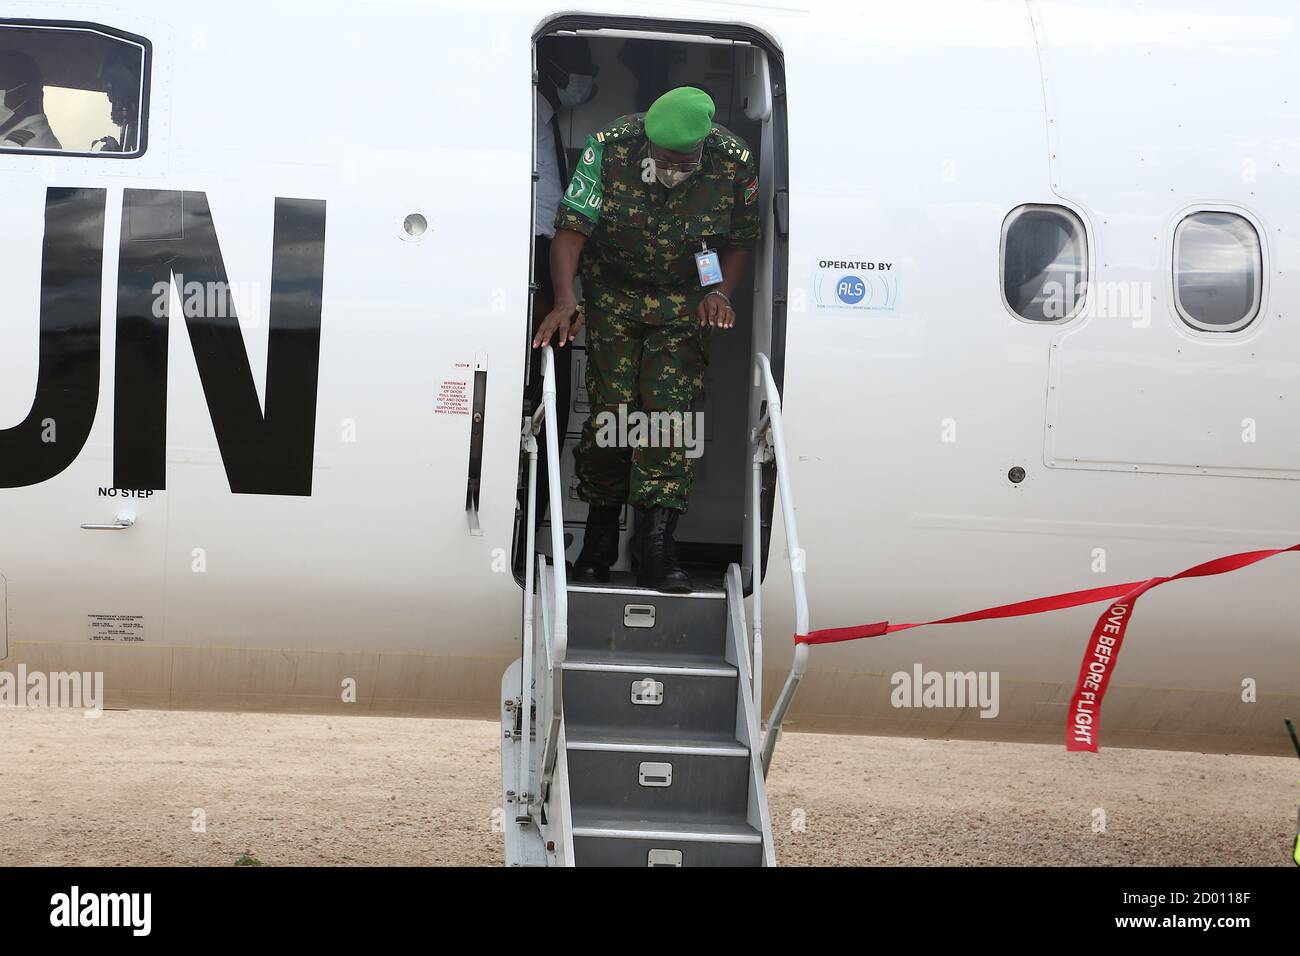 El Teniente General Diomede Ndegeya, Comandante de la Fuerza de la Misión de la Unión Africana en Somalia (AMISOM) desembarca de un avión al llegar a la sede del sector 5 en Jowhar, en el estado de HirShabelle, Somalia, durante su gira de familiarización el 20 de septiembre de 2020. Foto de stock